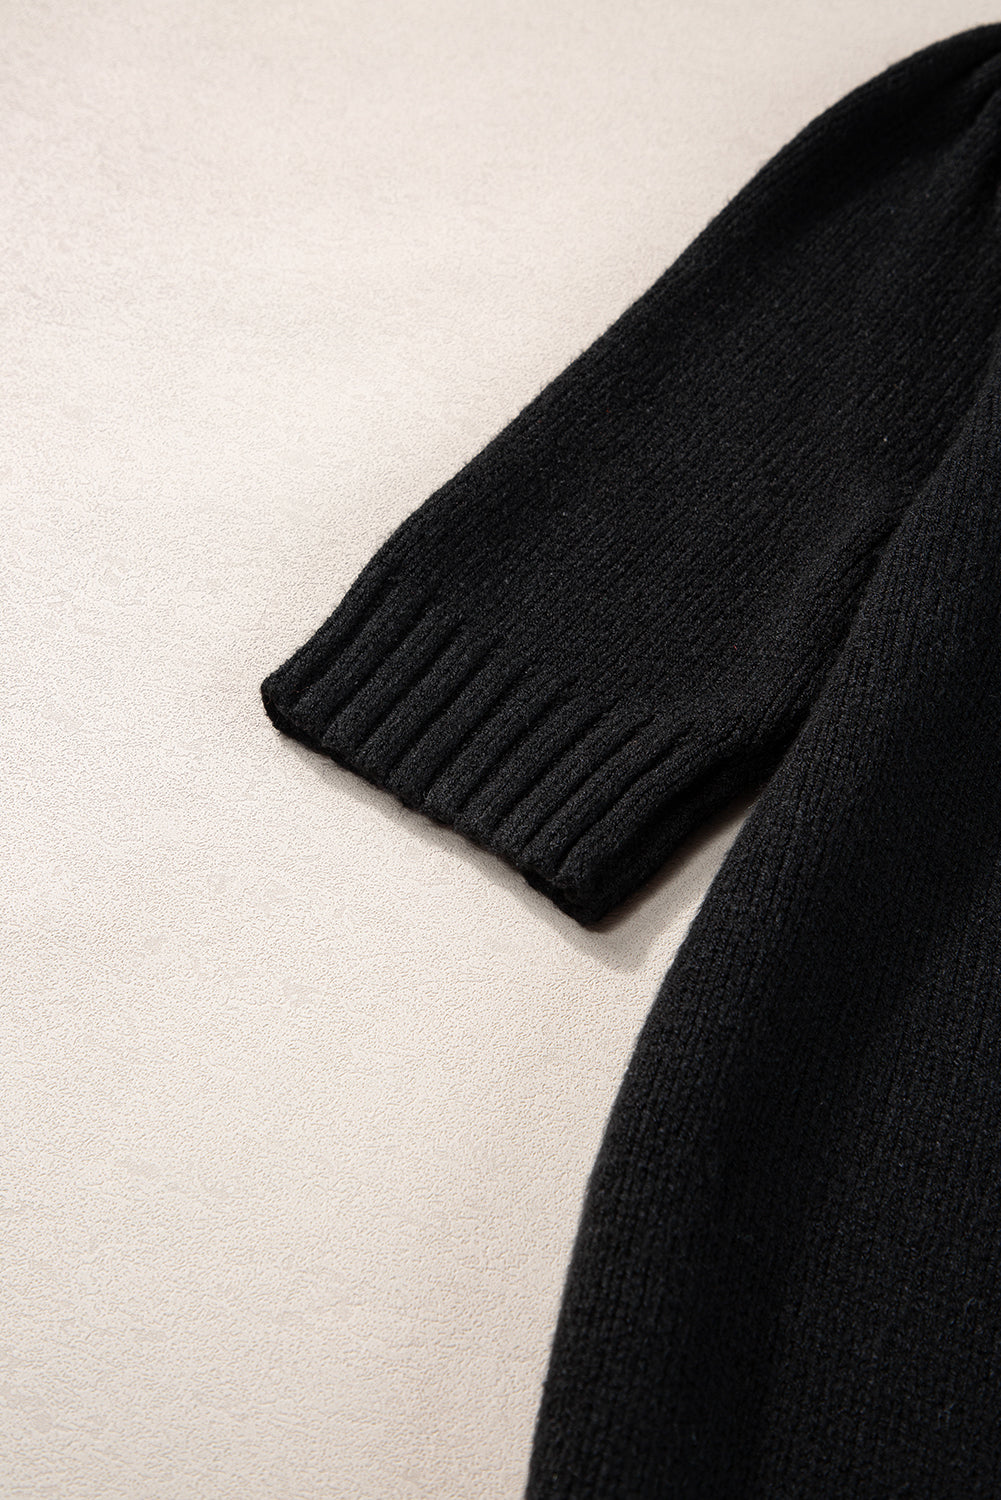 Black Knotted Keyhole Nape Short Sleeve Knit Sweater